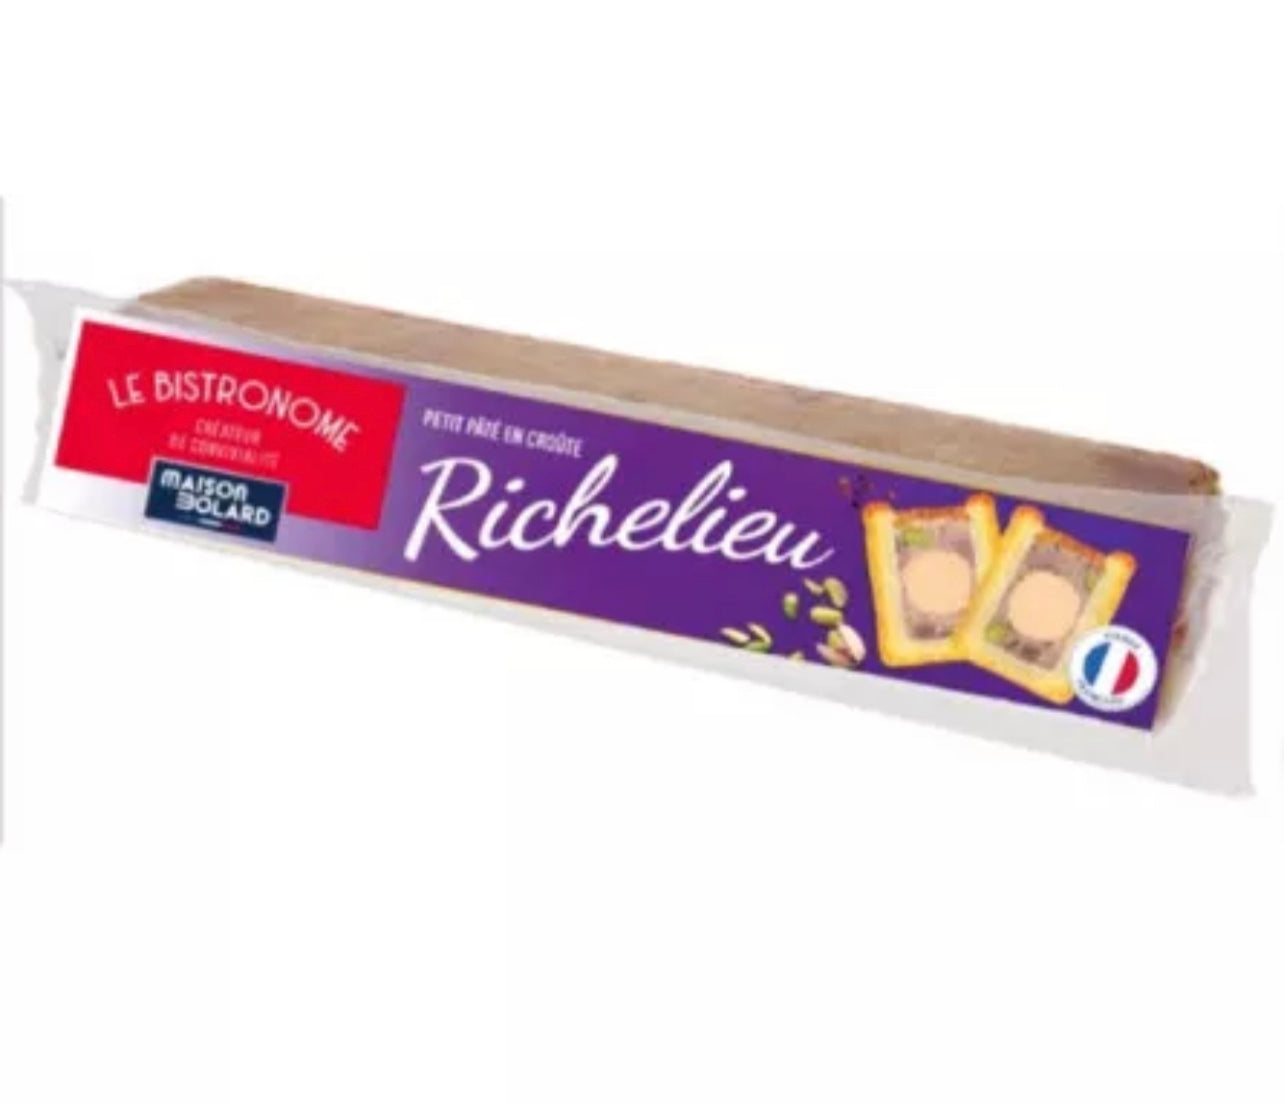 Mini pâté en croûte "Le Bistronome" Richelieu au canard - 450g